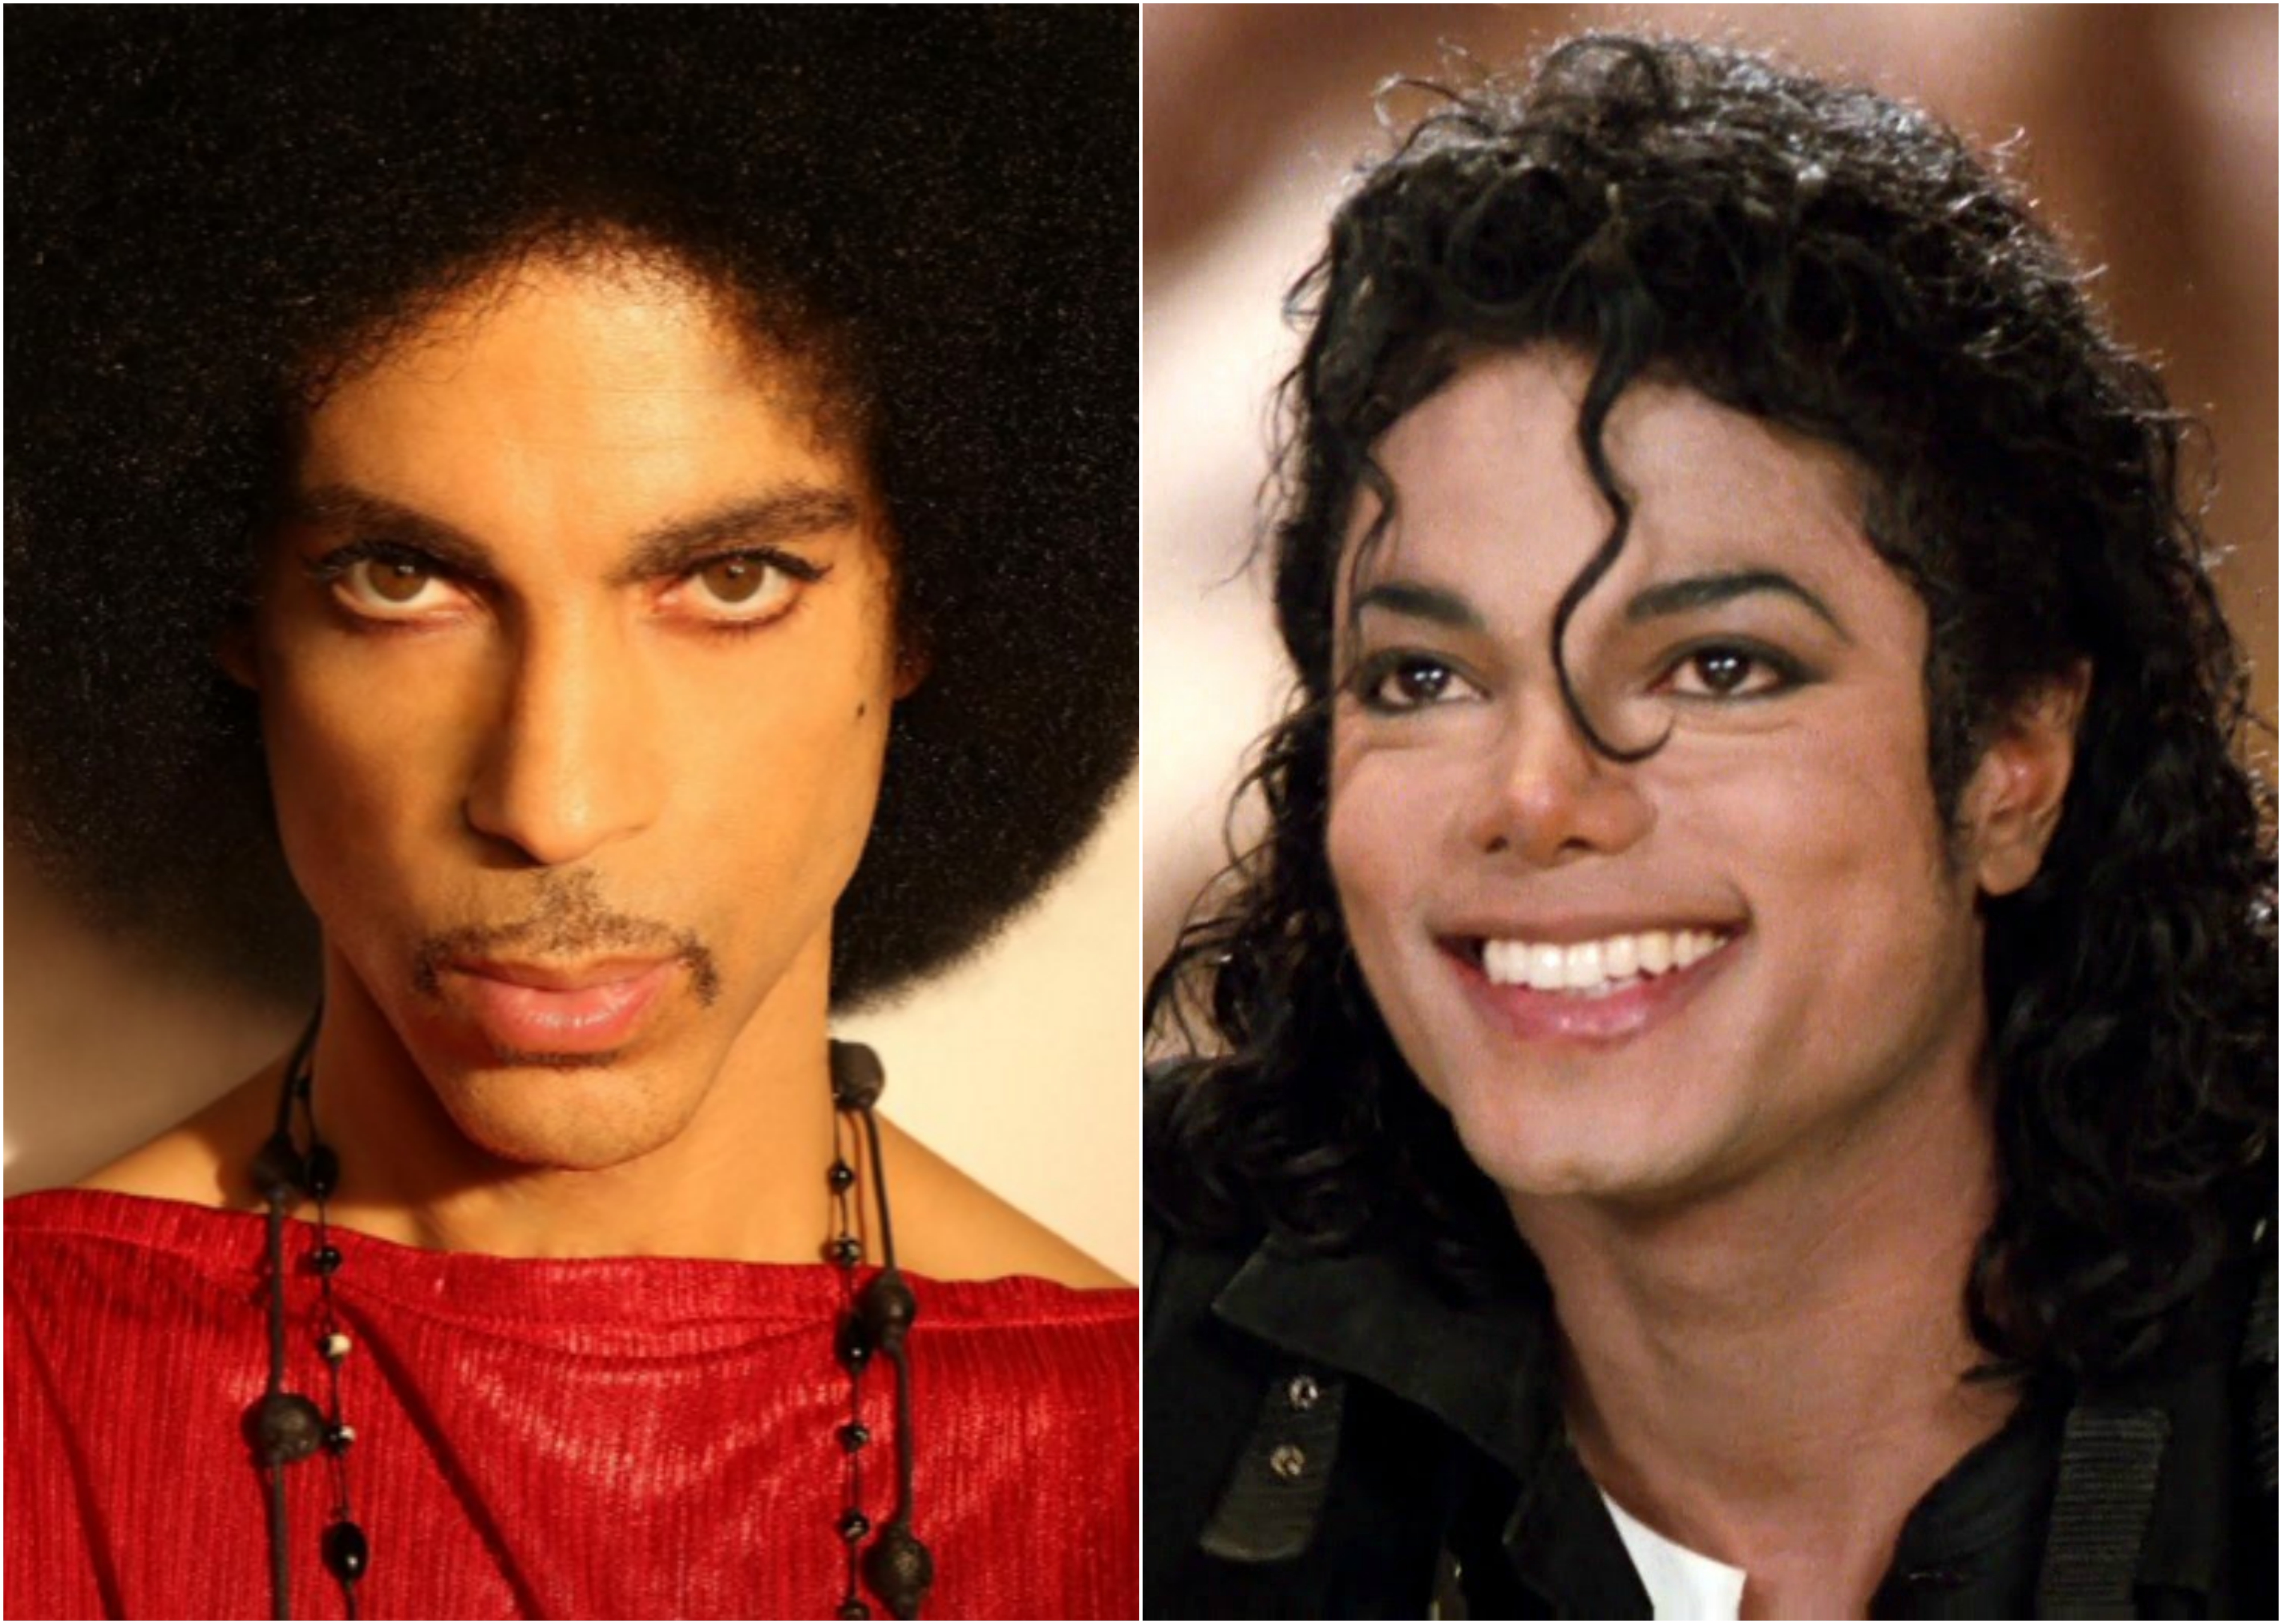 Le jour où Prince a tenté de tuer Michael Jackson !